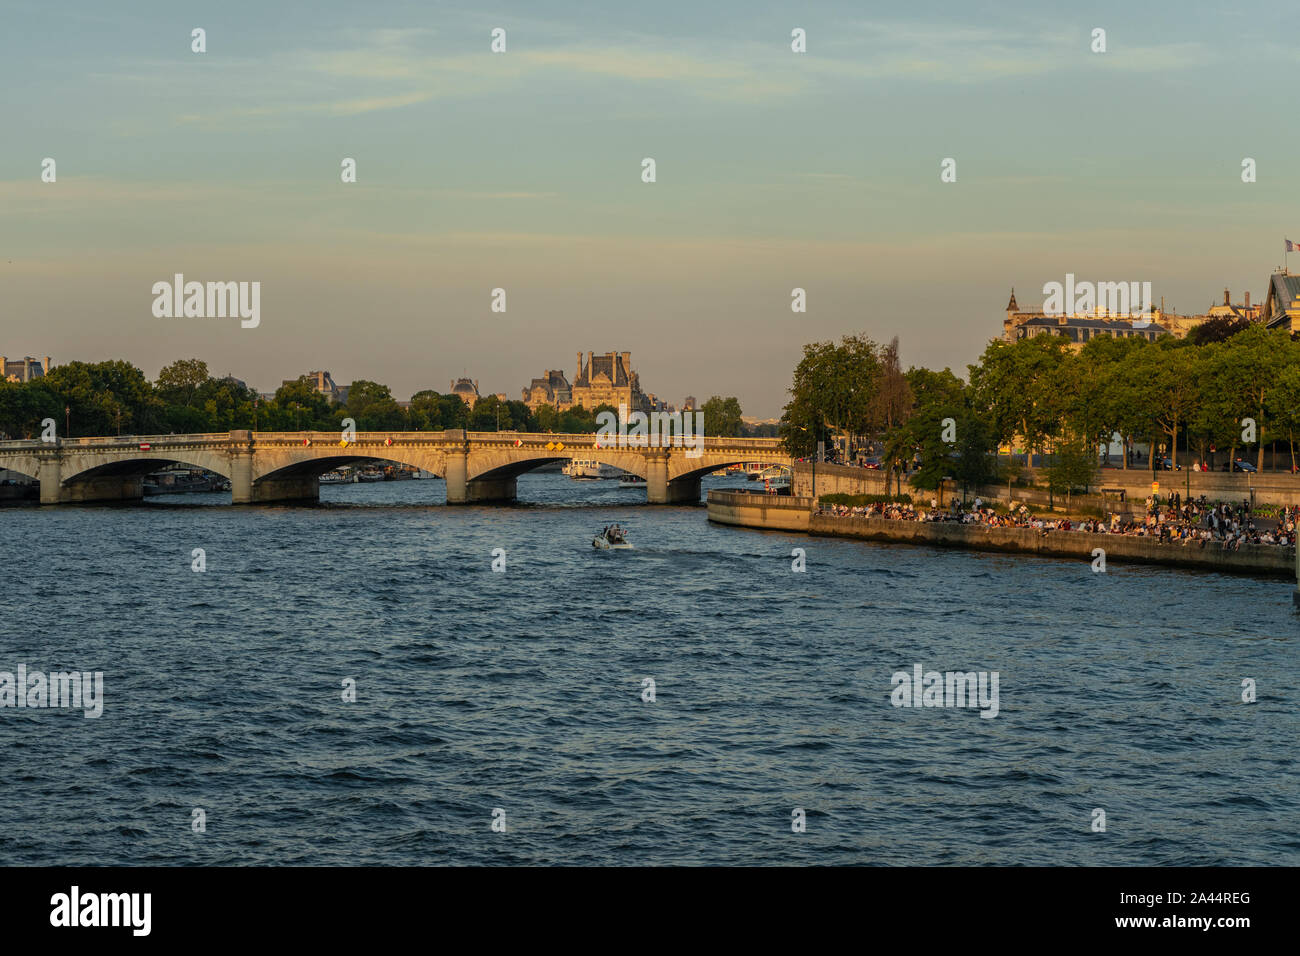 Pont de la Concorde in Paris, bridge across the River Seine in Paris, France Stock Photo